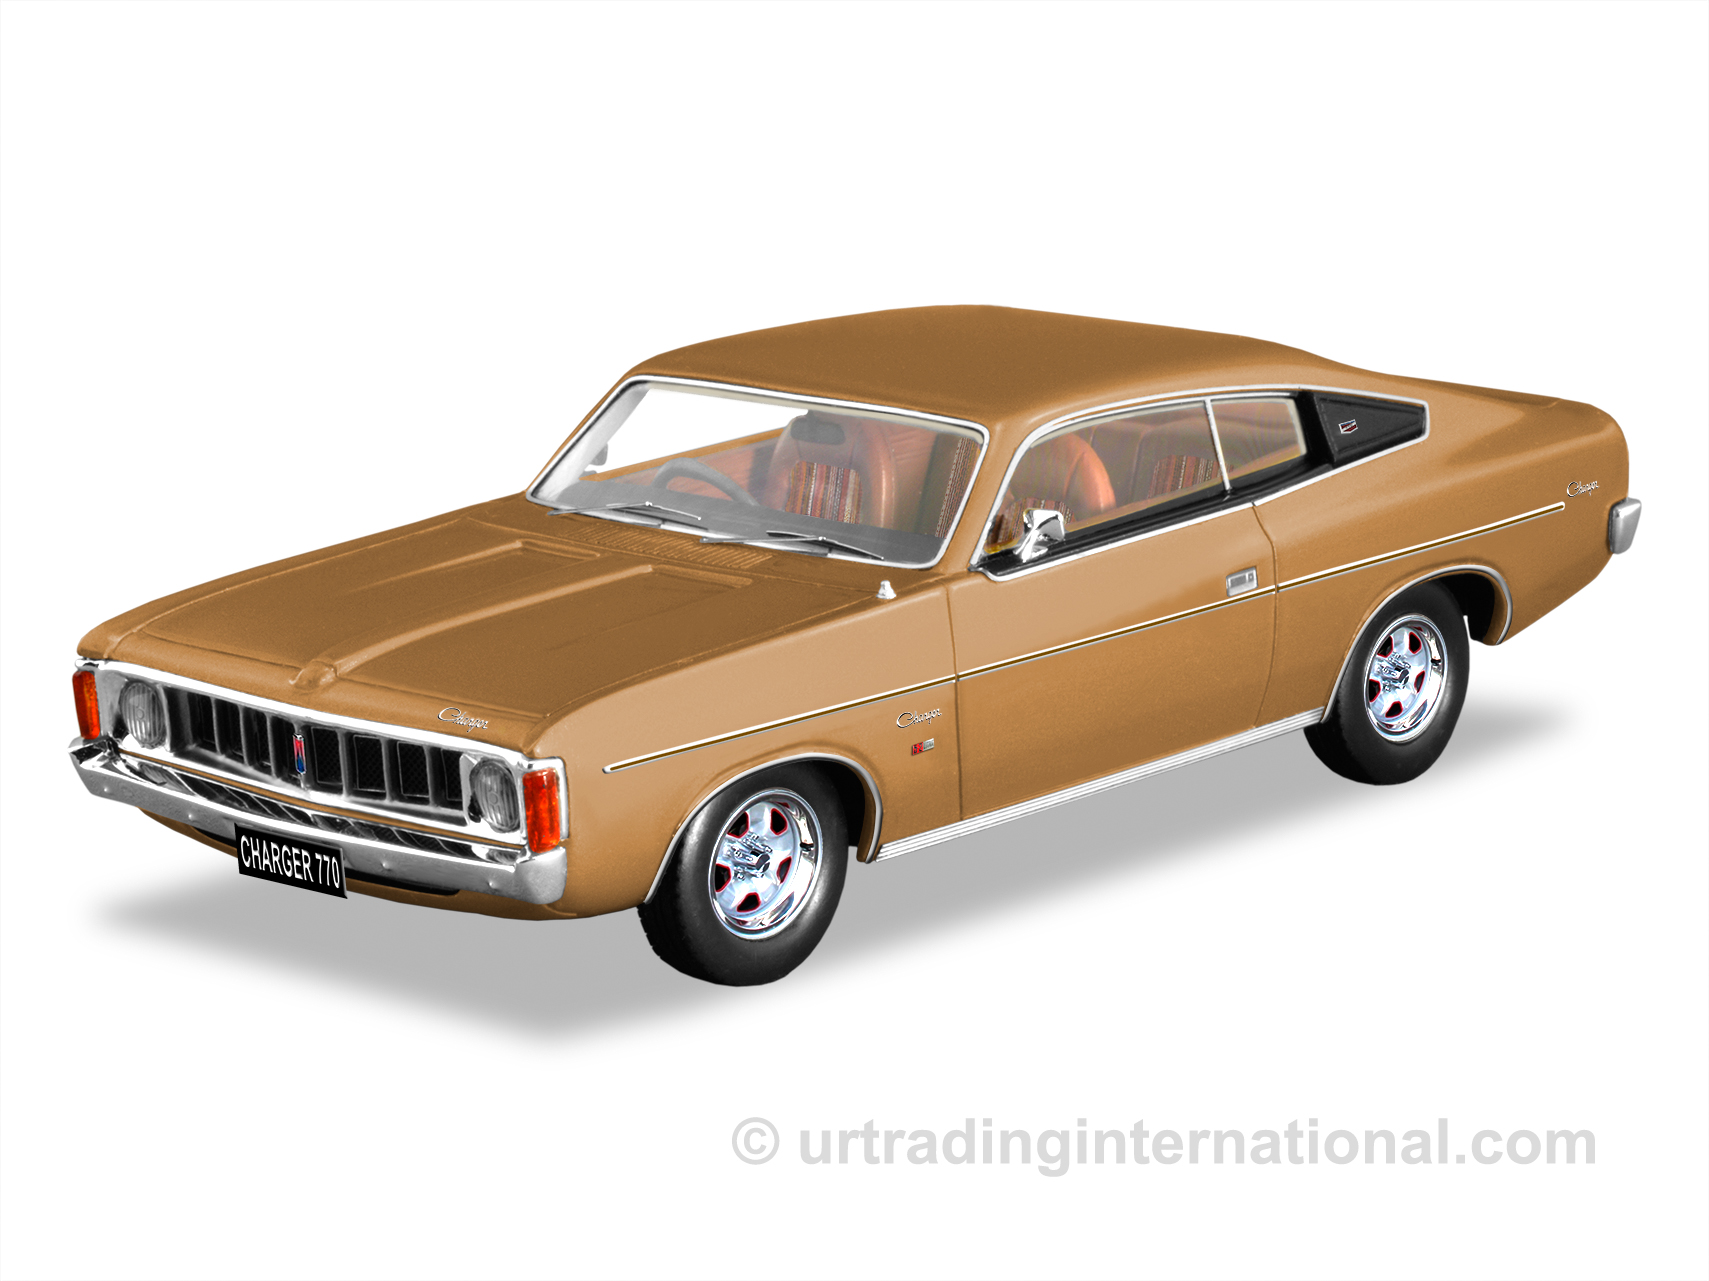 1975 VK Chrysler Charger 770 – Topaz Gold